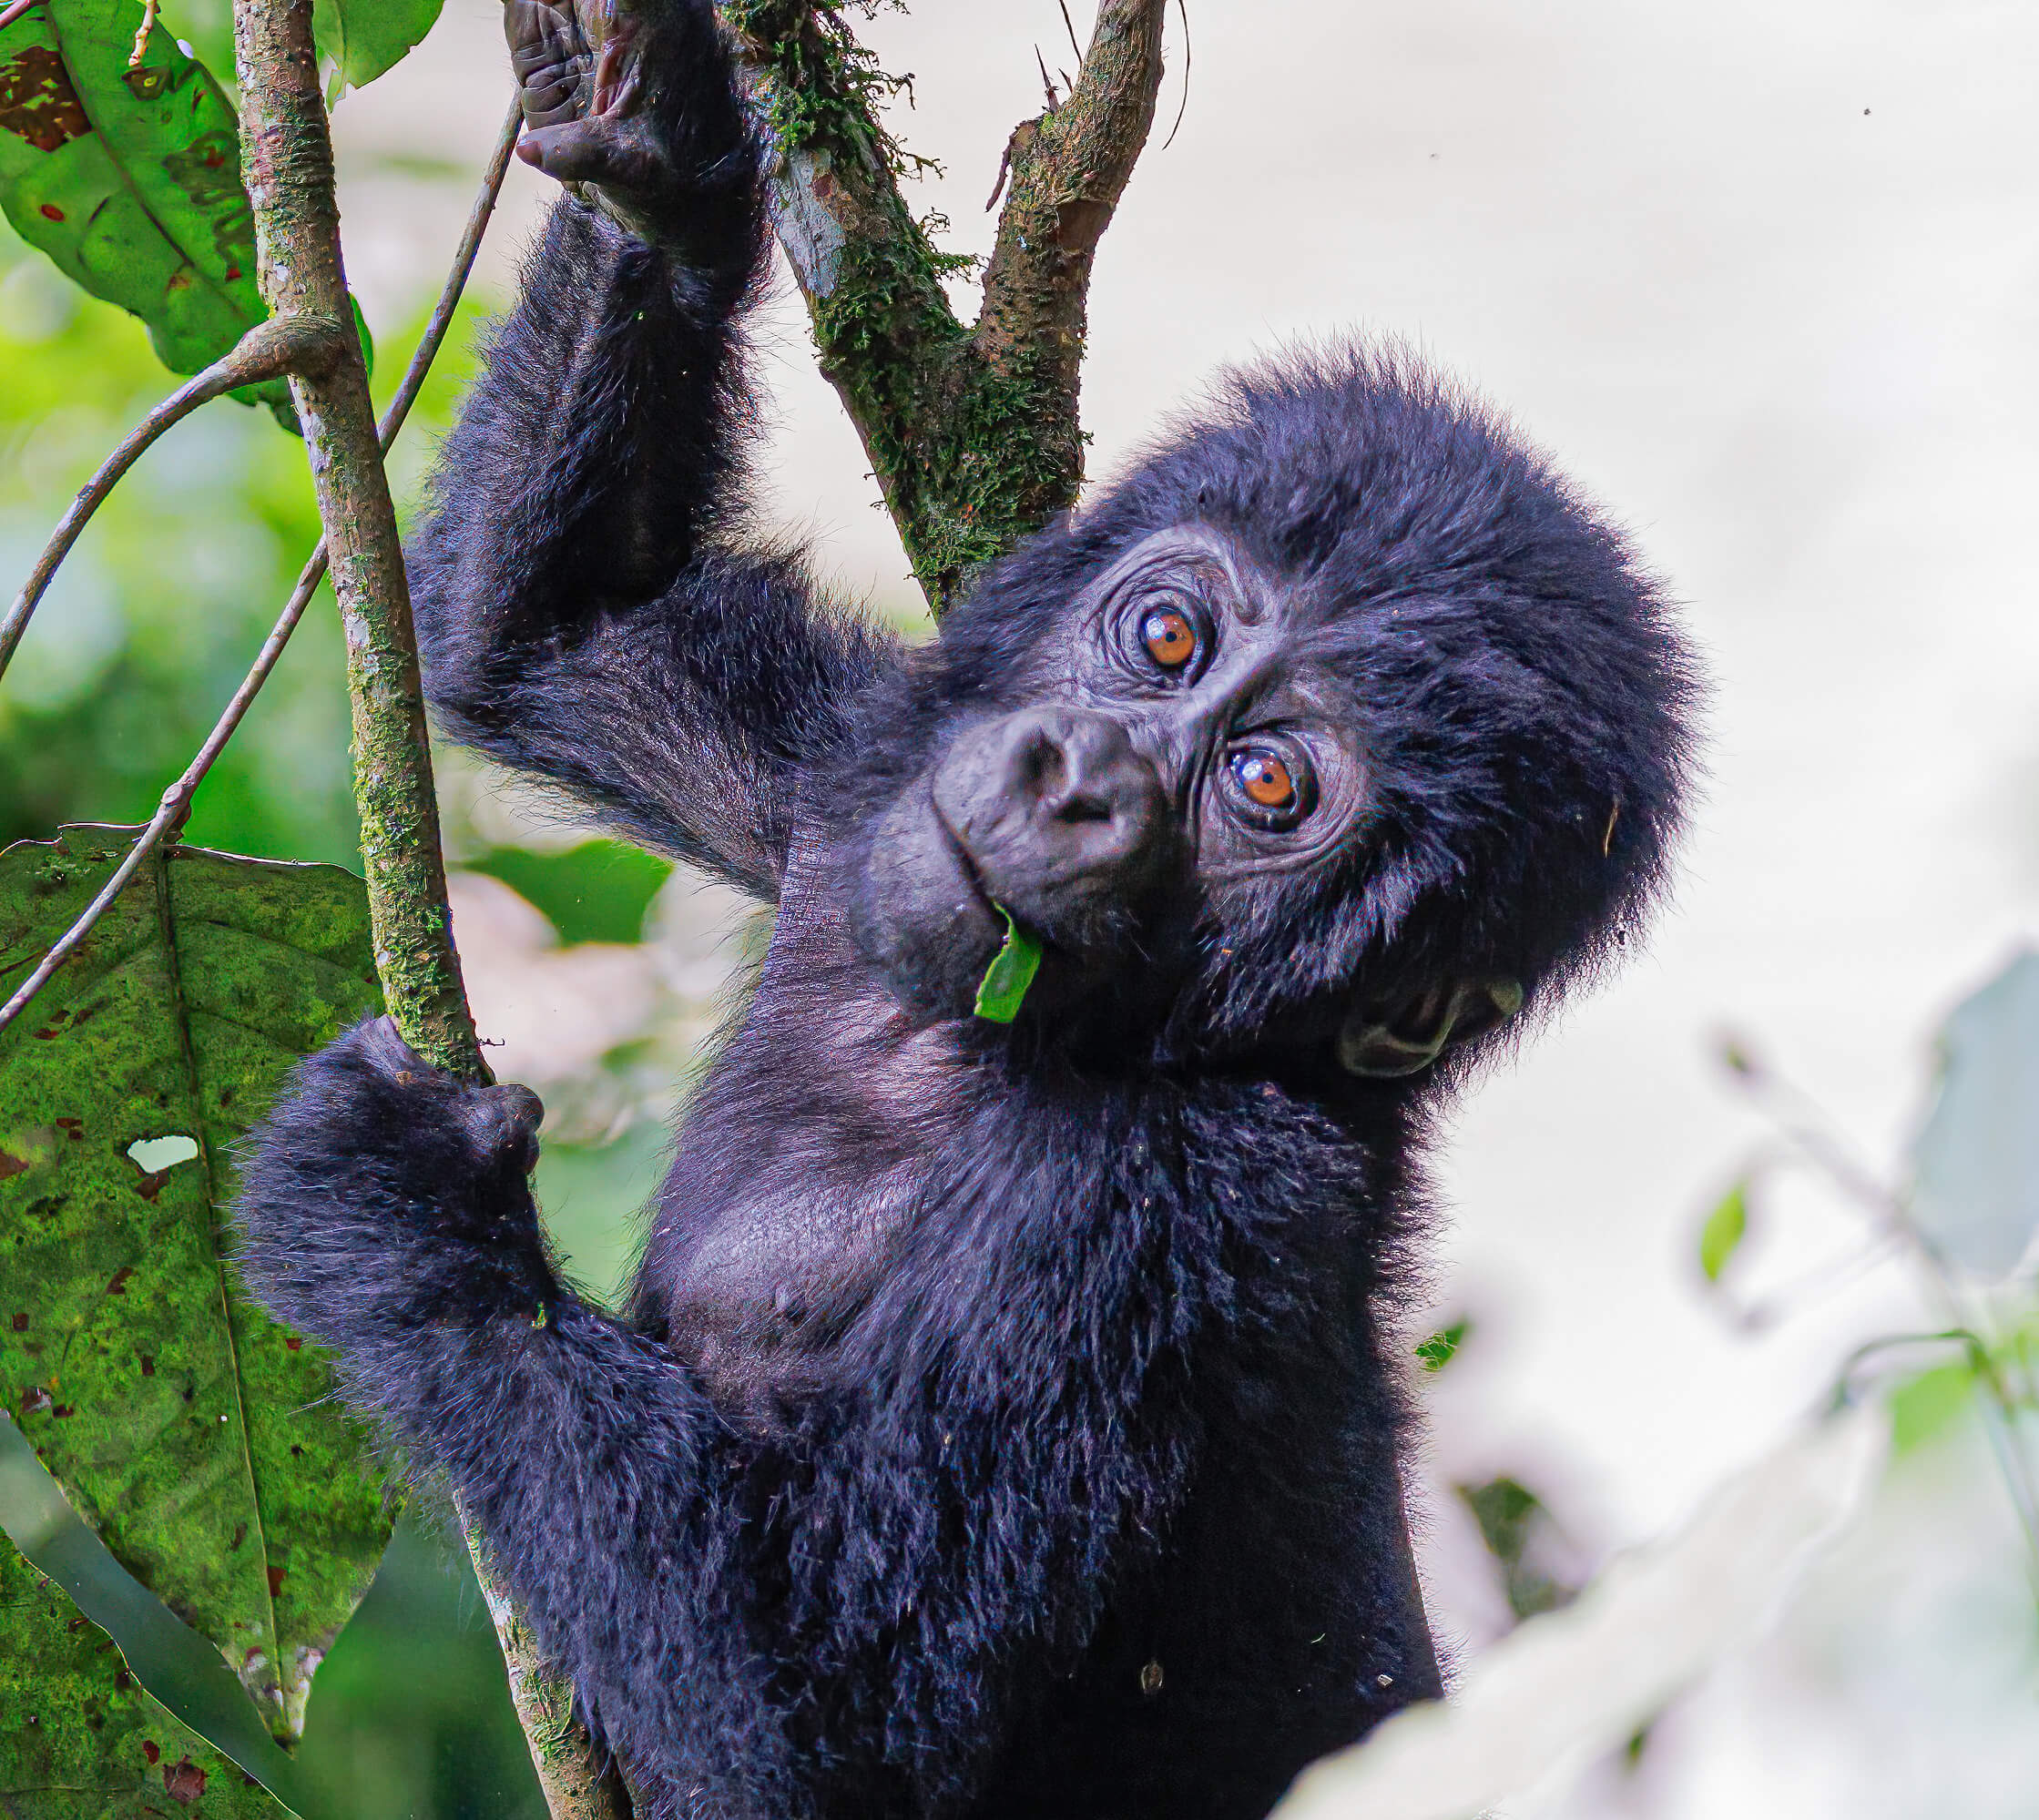 Baby gorilla in Oeganda